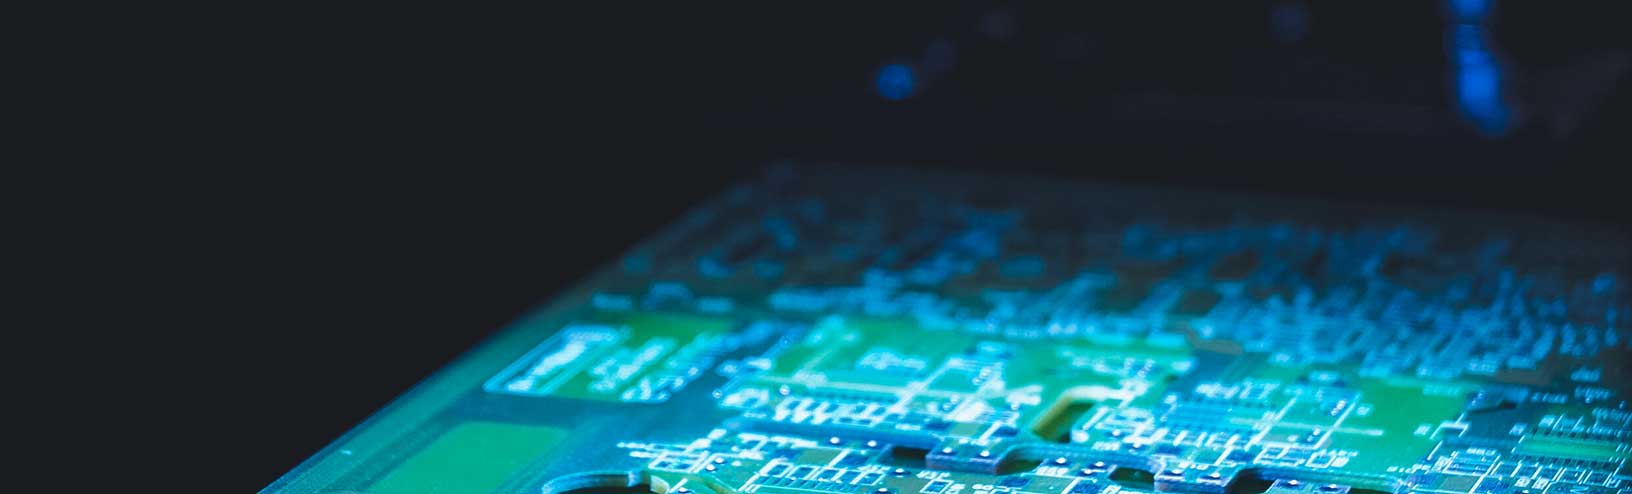 Inspeção de uma placa de circuito impresso (PCB) eletrônico usando as soluções de inspeção sem contato da Hexagon para produtos eletrônicos 